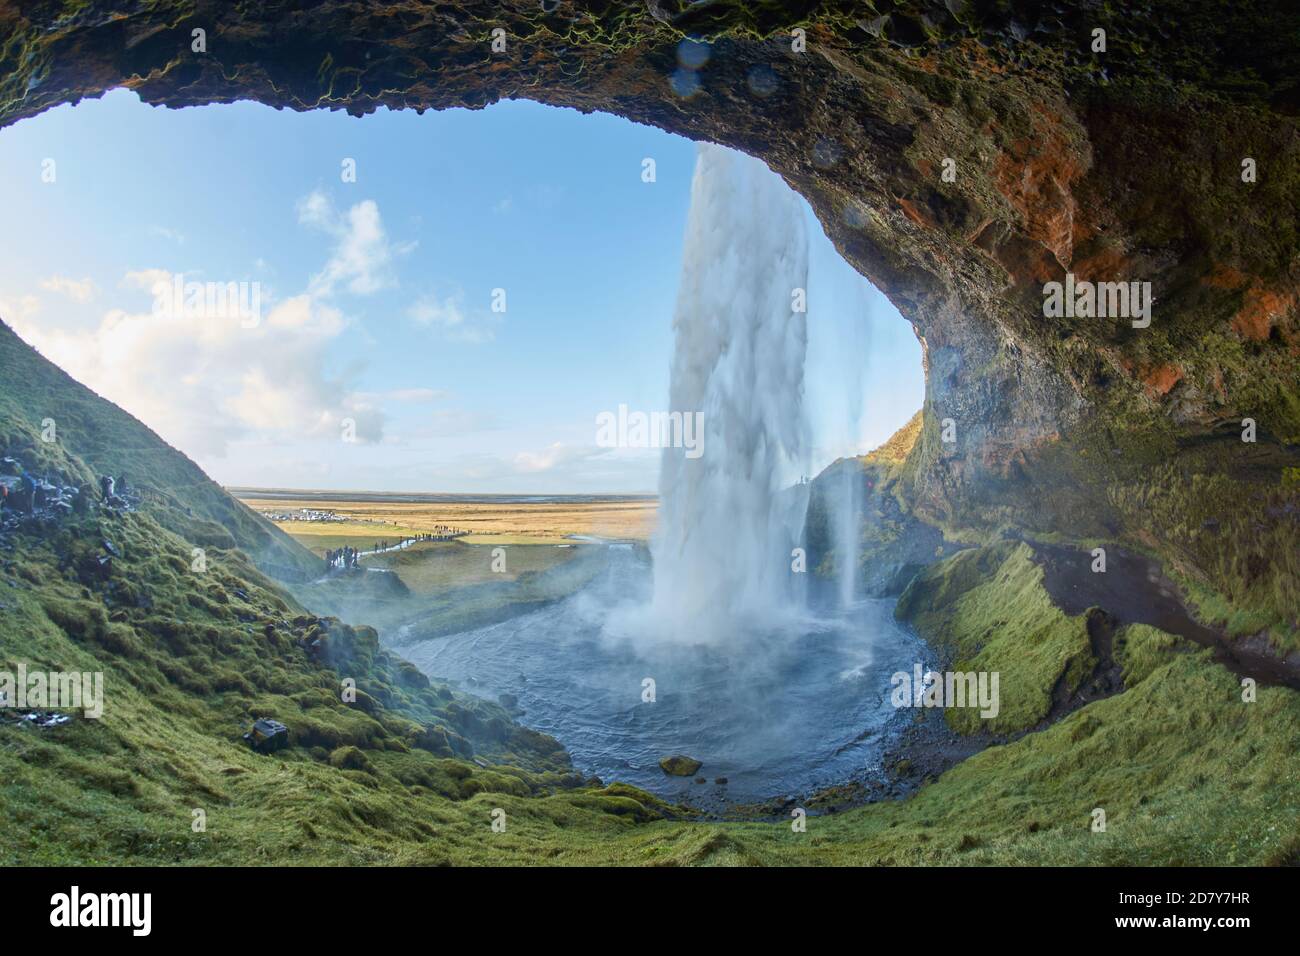 Schöner Wasserfall in Island, isländischer Wasserfall Seljalandsfoss, Foto aus der Höhle im Inneren des Wasserfalls Stockfoto